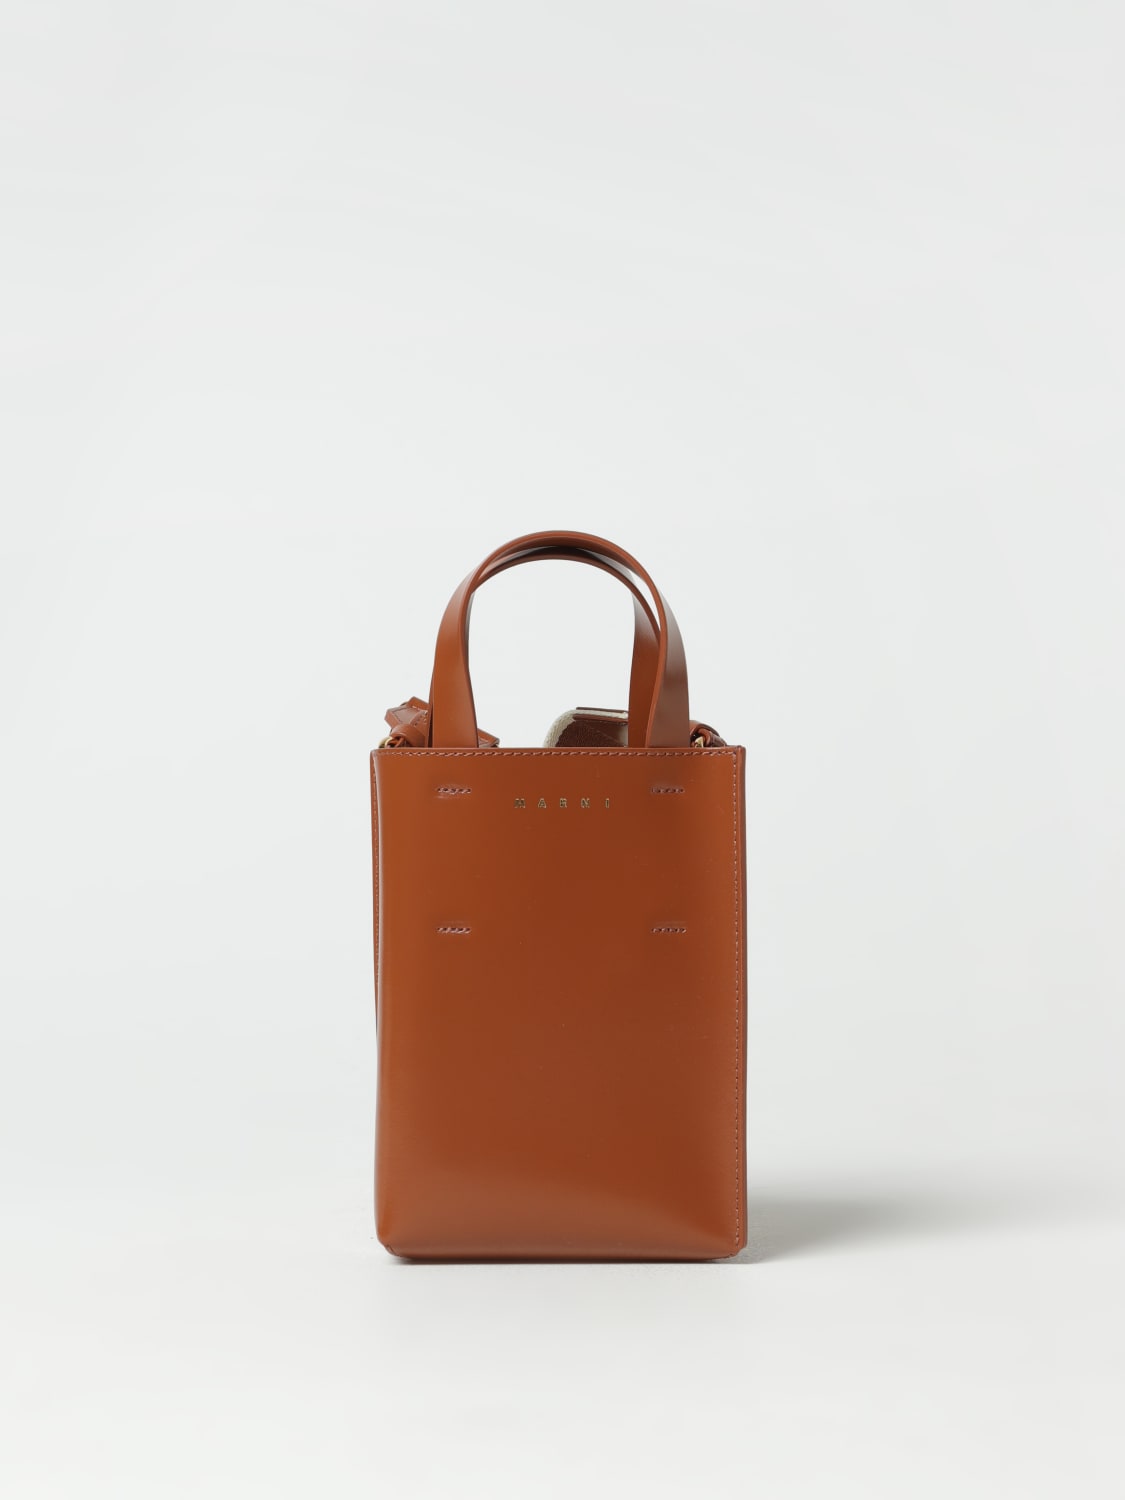 MARNI: mini bag for women - Black  Marni mini bag SHMP0050U0LV639